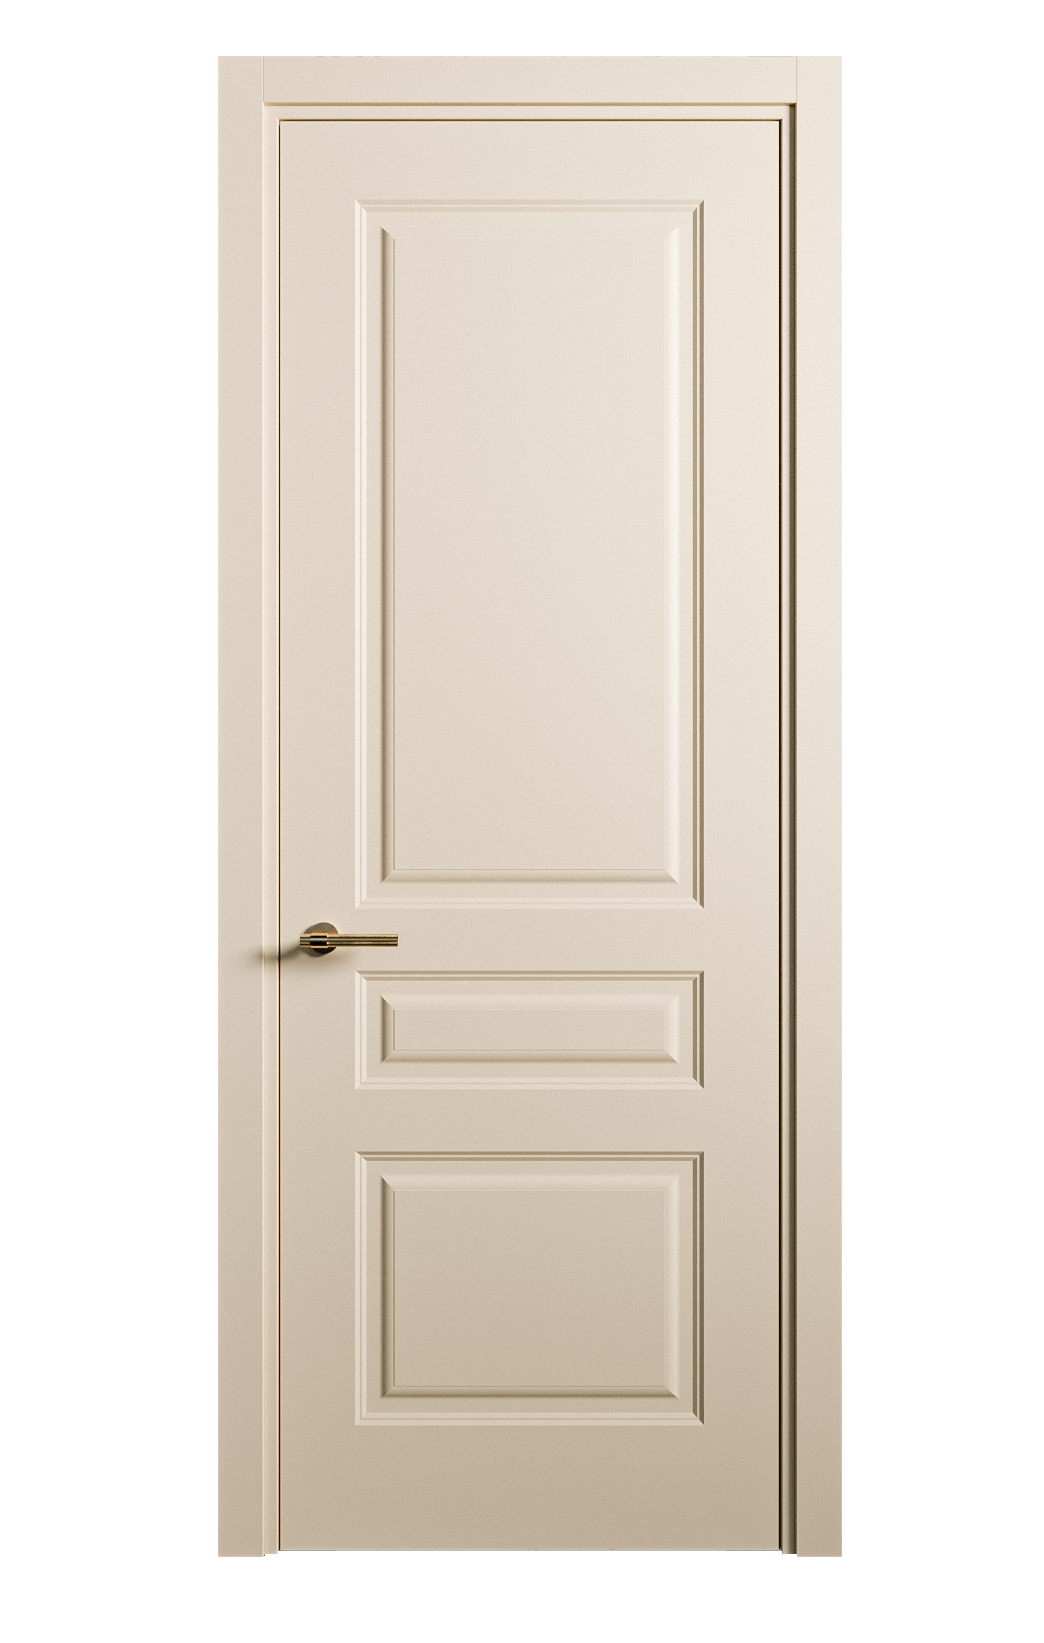 Межкомнатная дверь Вита-2 глухая эмаль ral 1015 26350